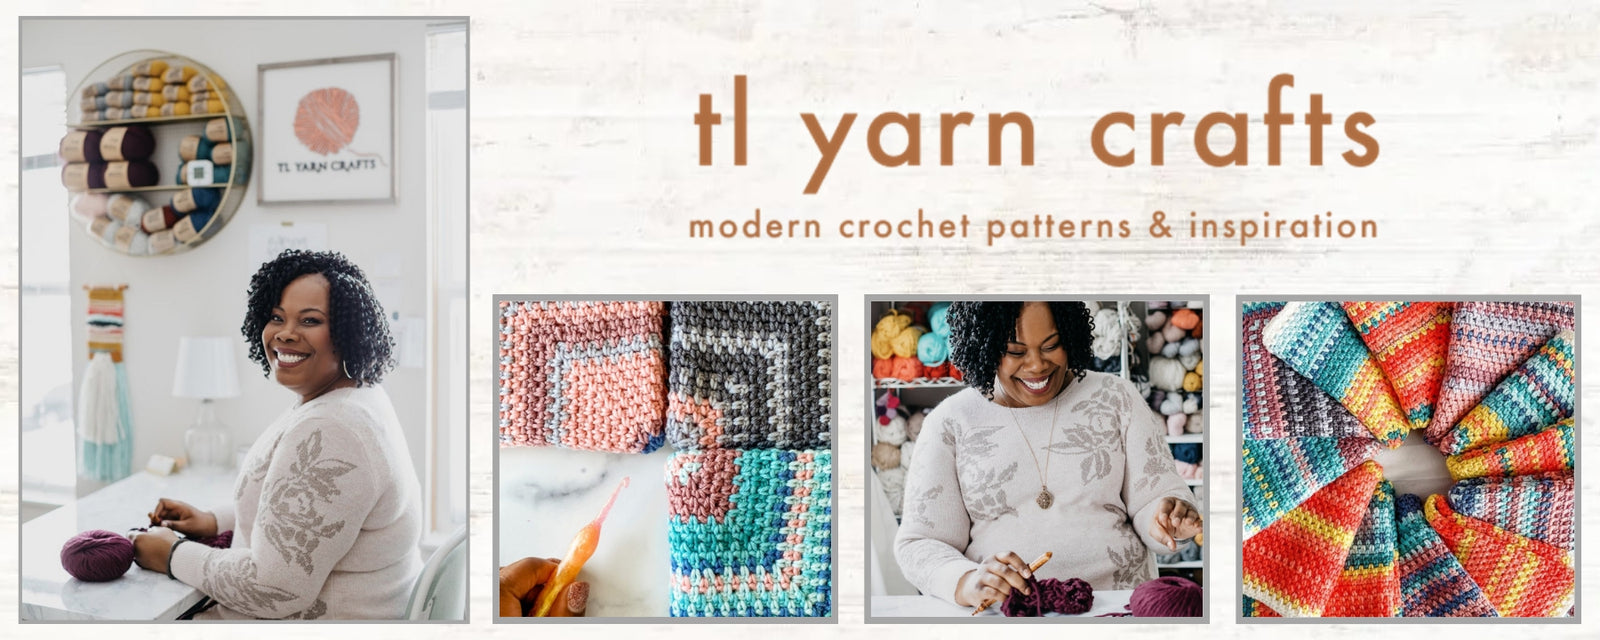 TL Yarn Crafts